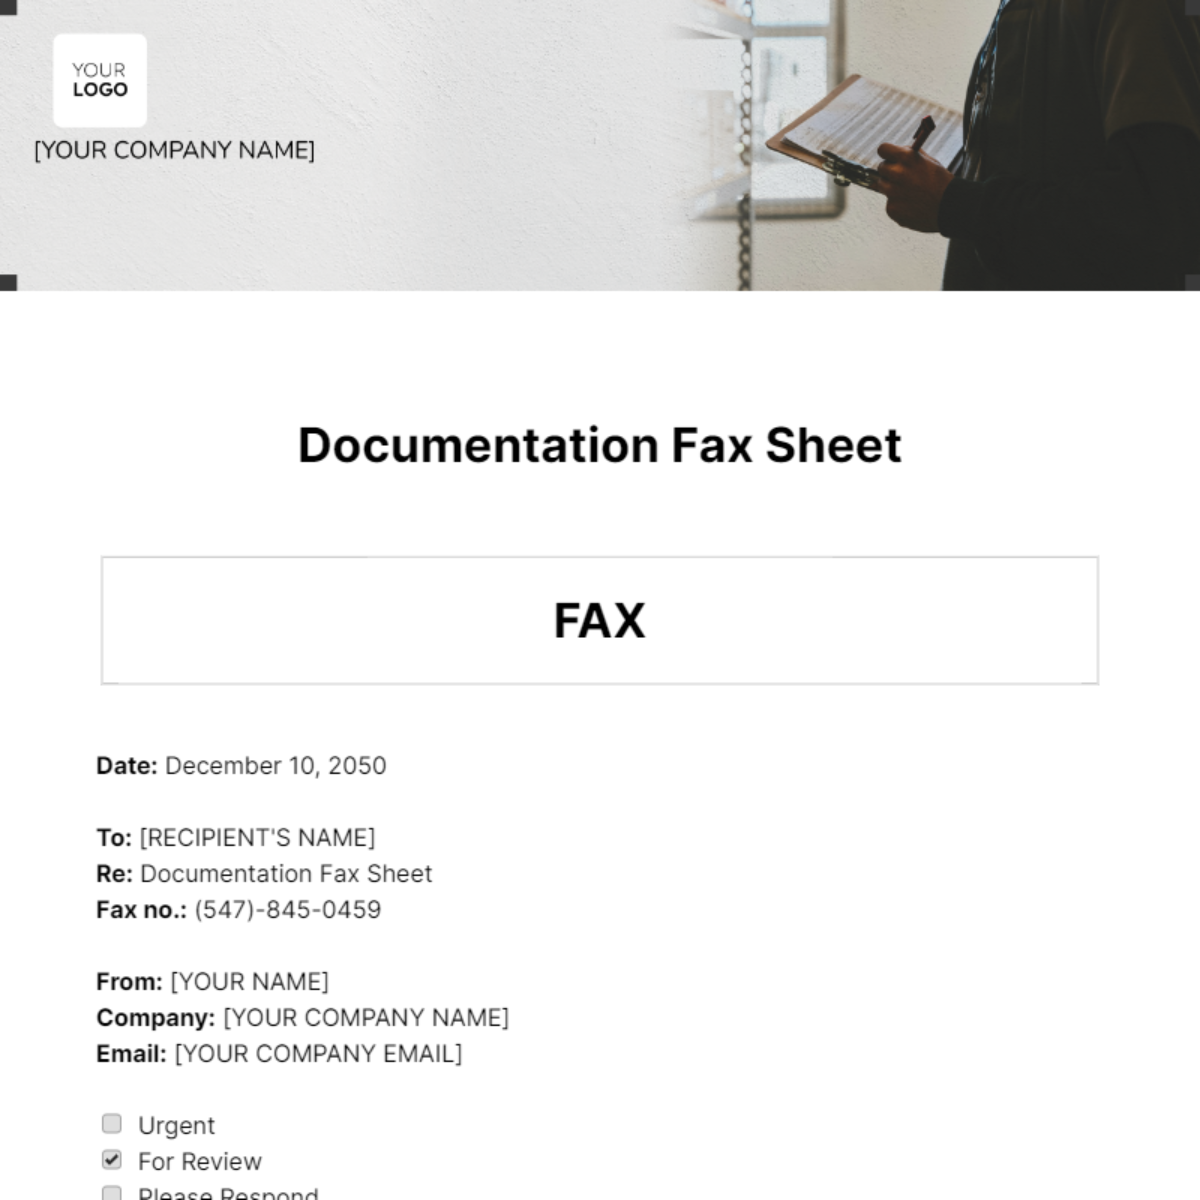 Documentation Fax Sheet Template